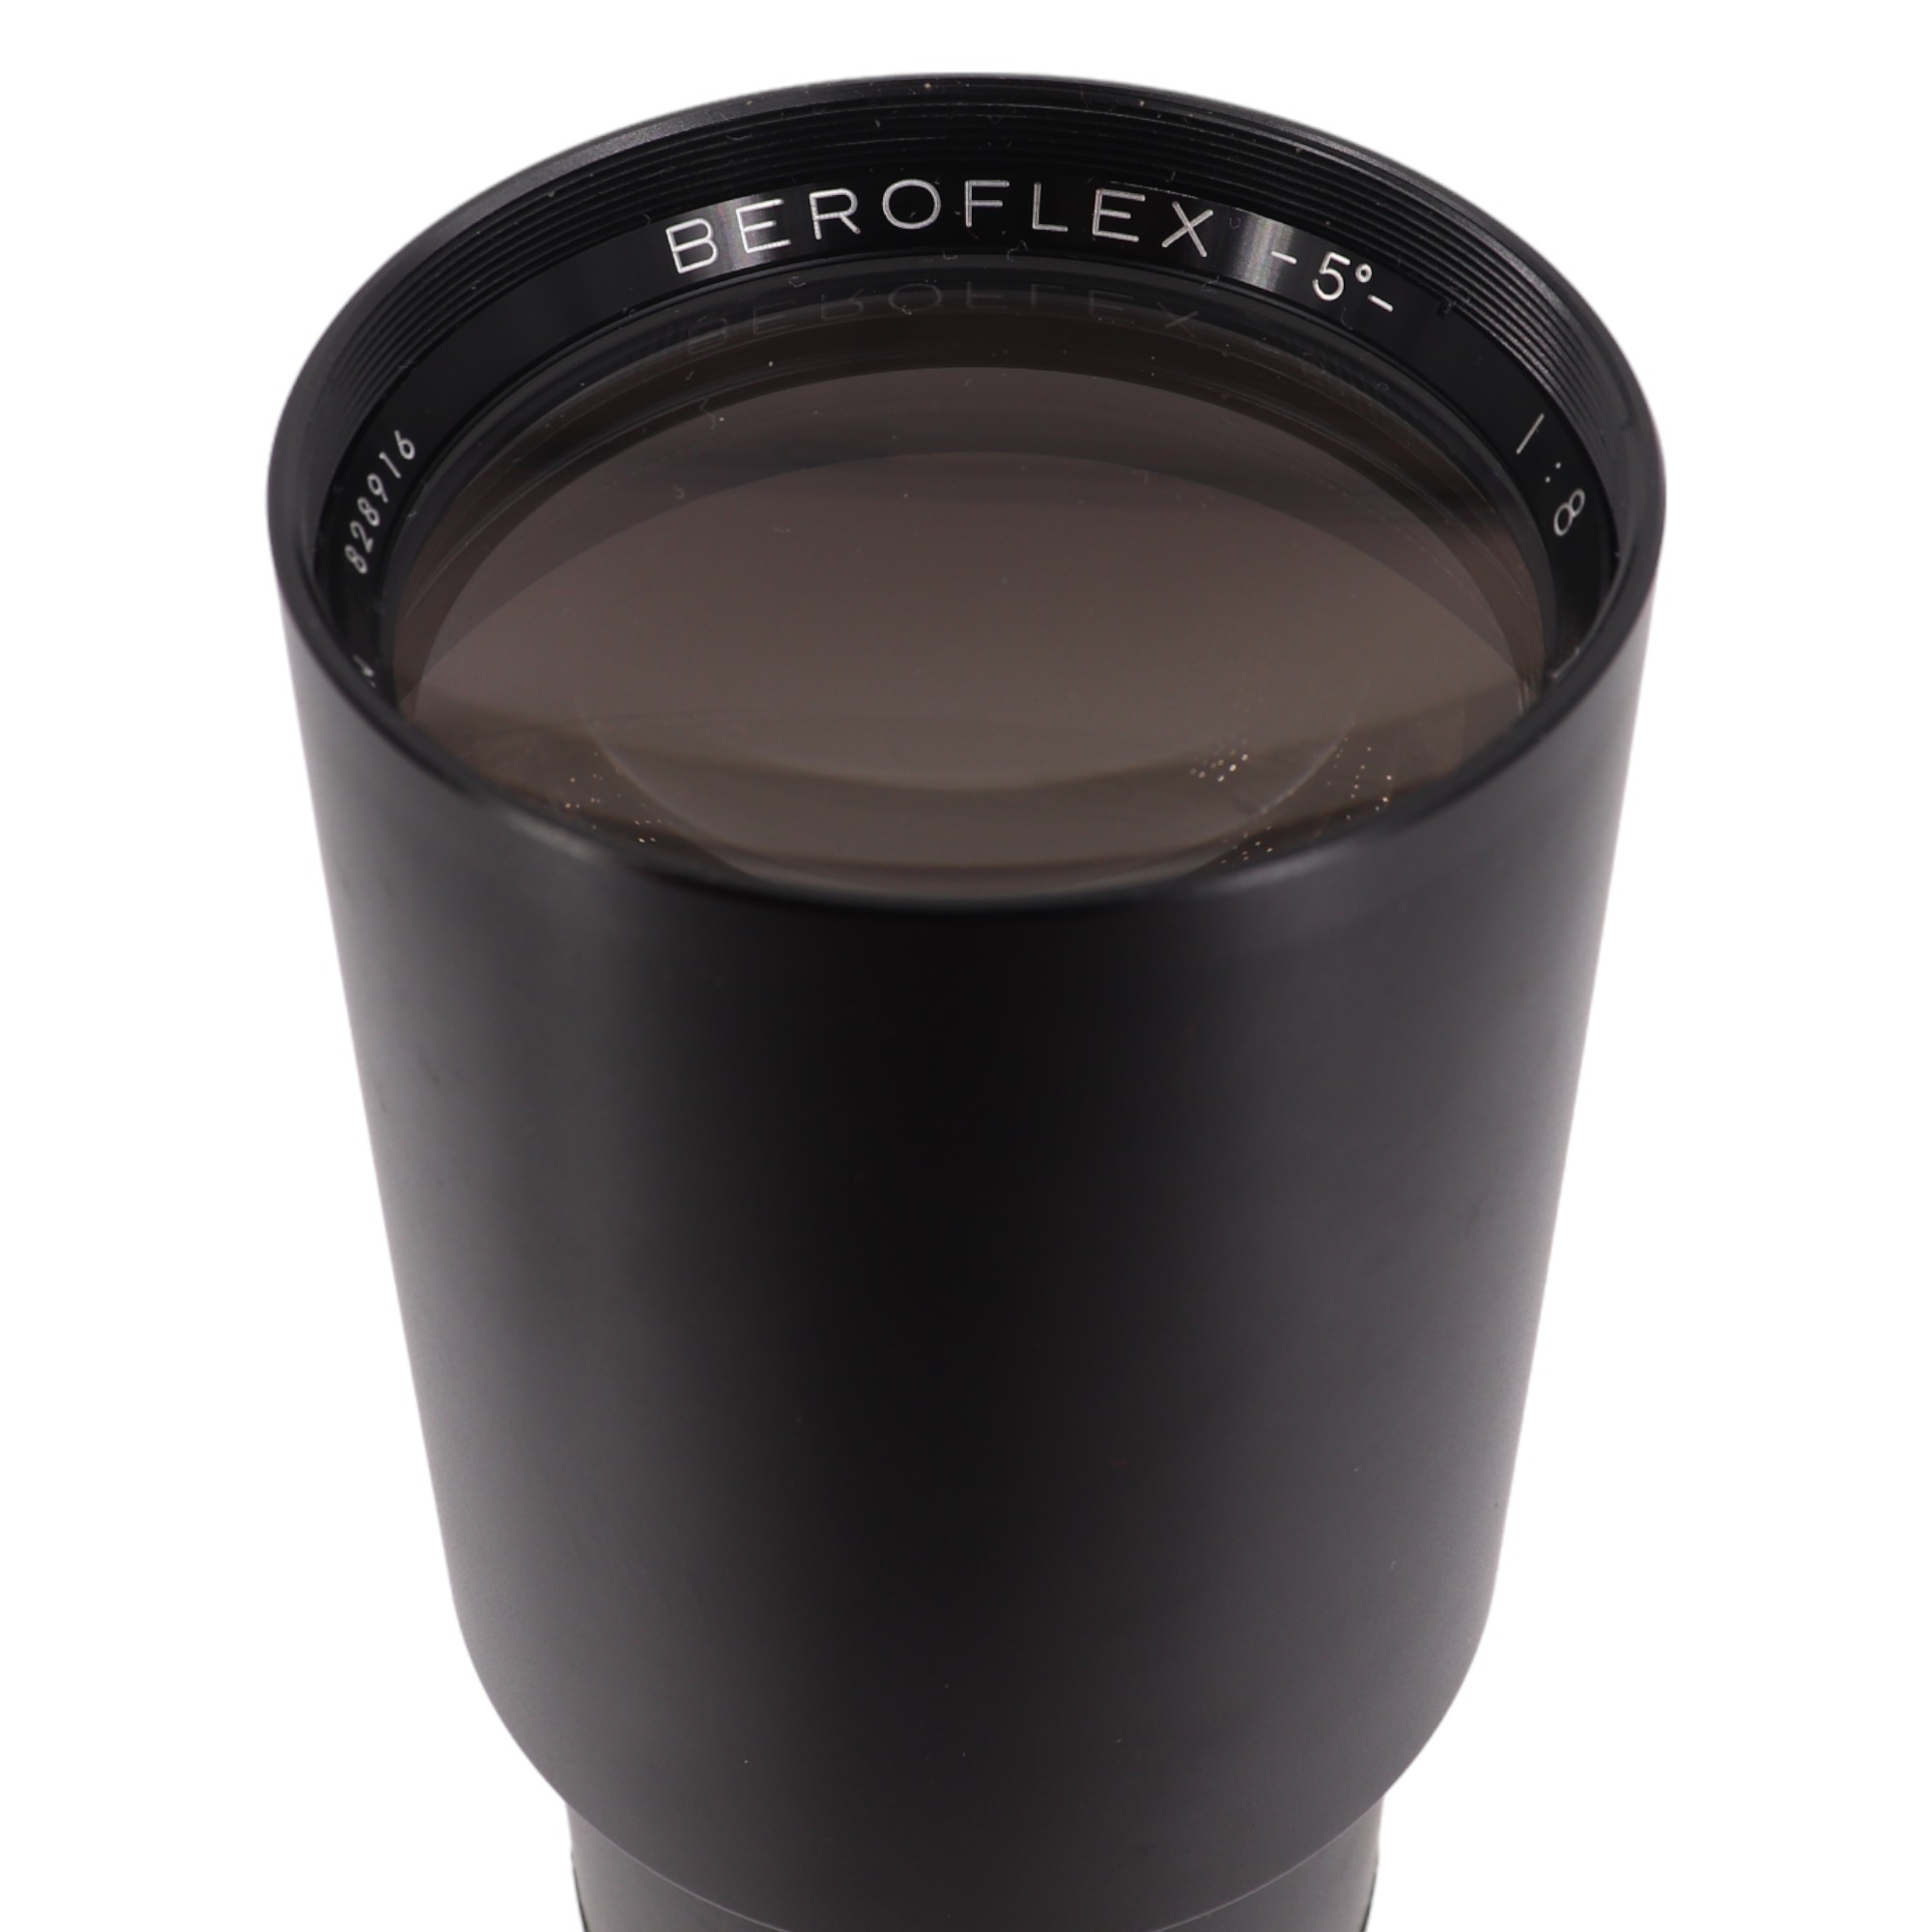 A Beroflex 5º 1:8 F=500 mm ∅67 camera zoom lens - Image 2 of 3